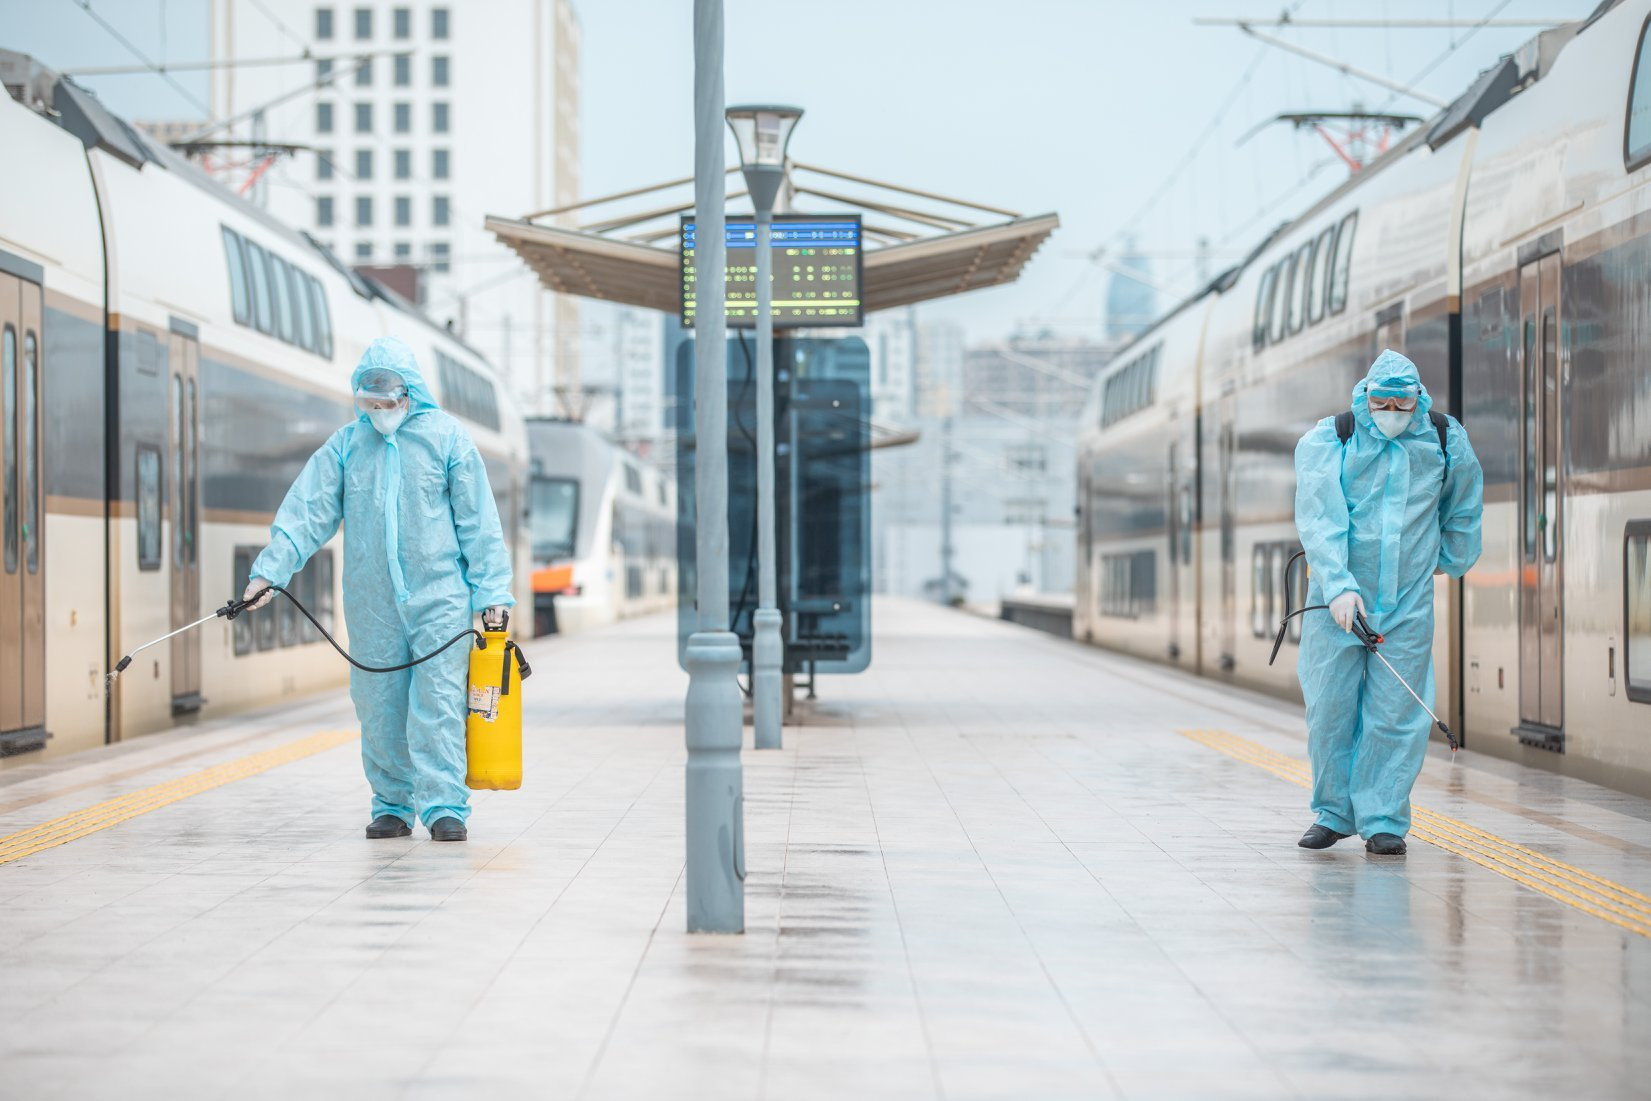 Qatarların və stansiyaların dezinfeksiyası davam etdirilir - FOTO